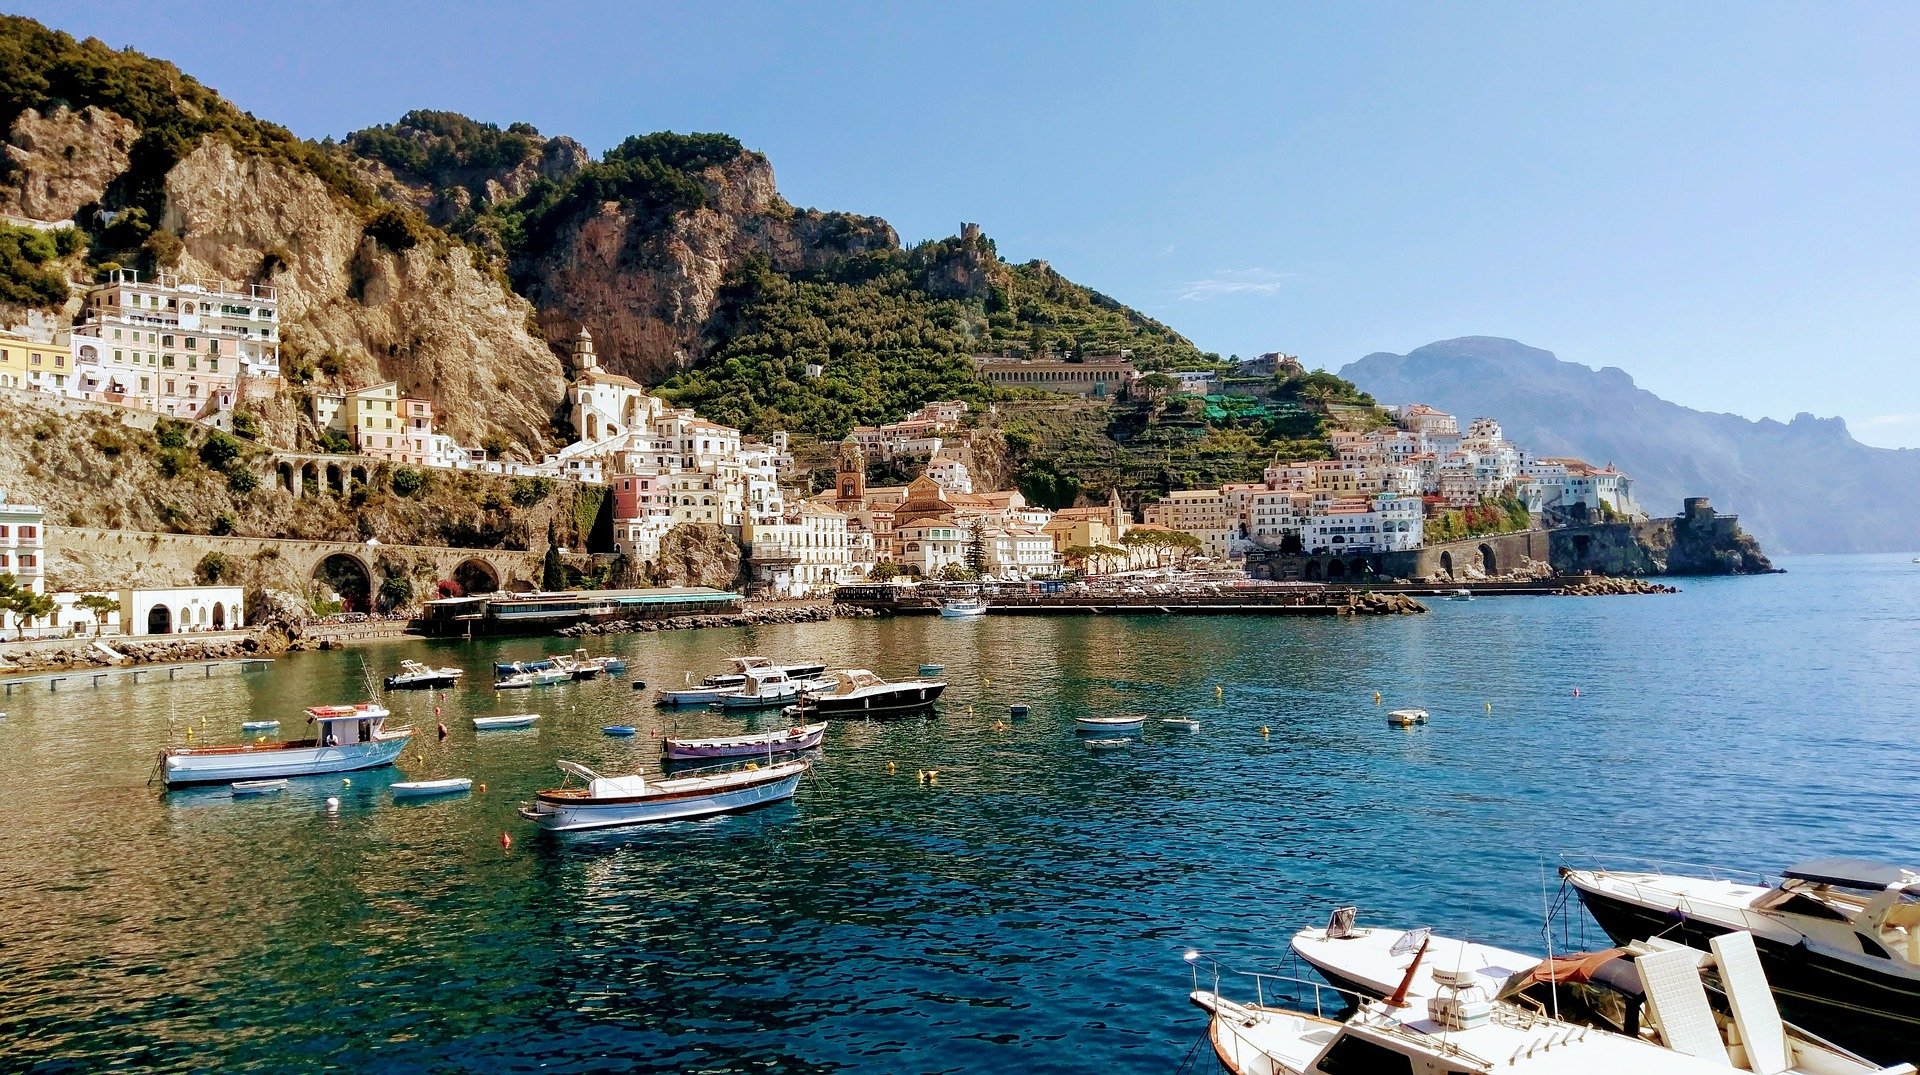 Die Stadt Amalfi an der gleichnamigen Amalfi-Küste